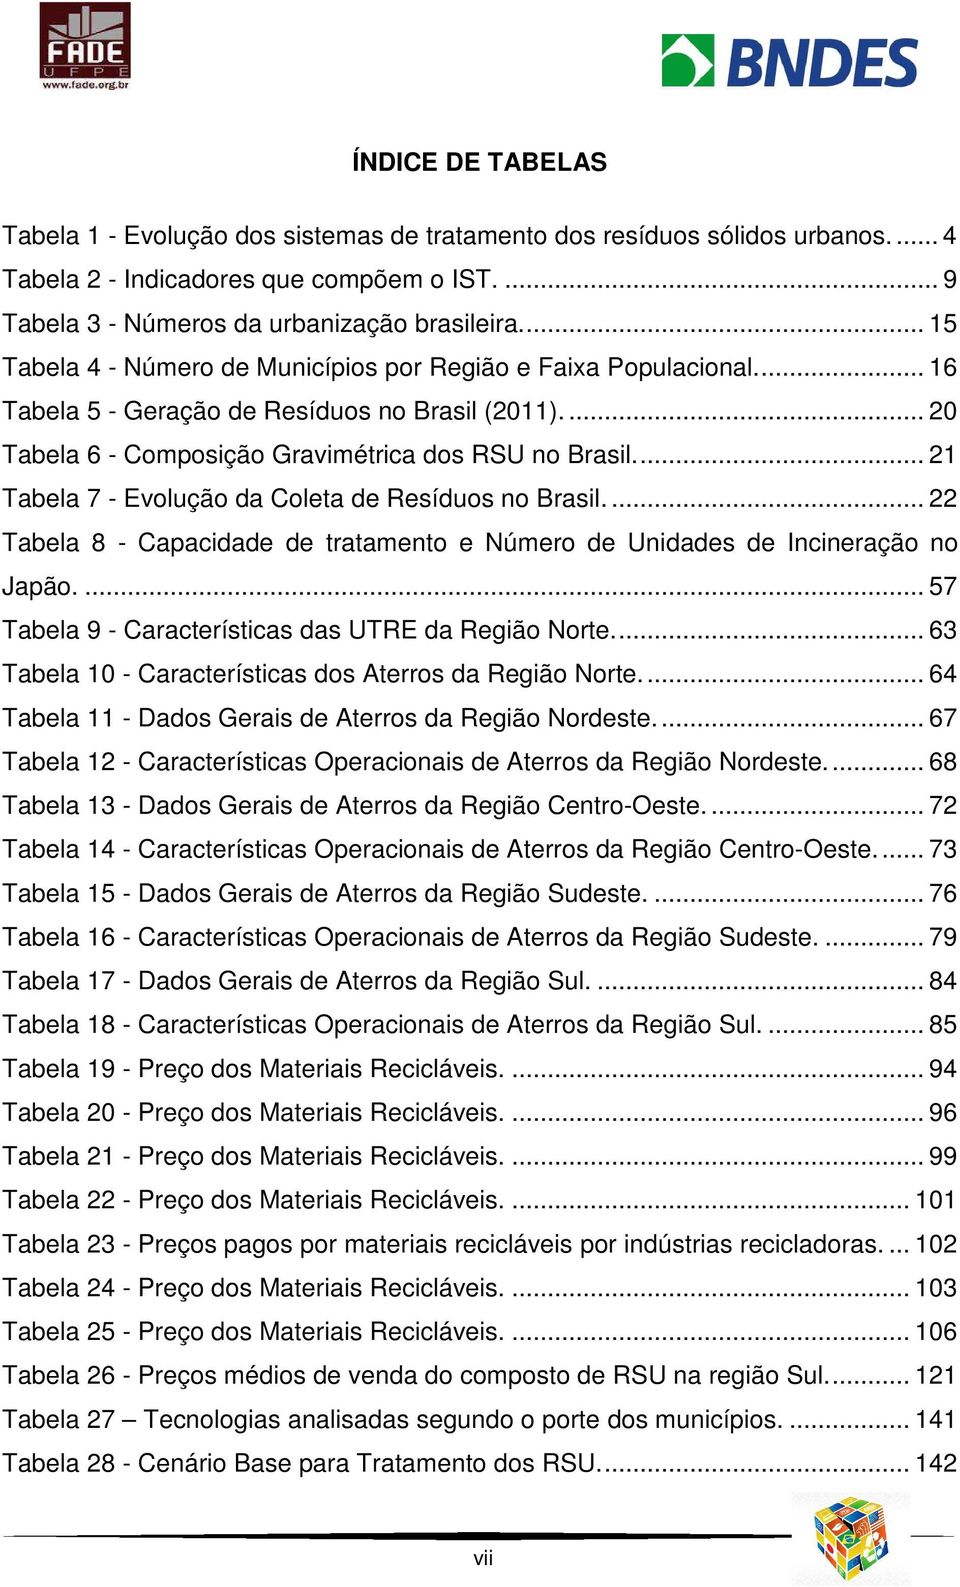 ... 21 Tabela 7 - Evolução da Coleta de Resíduos no Brasil.... 22 Tabela 8 - Capacidade de tratamento e Número de Unidades de Incineração no Japão.